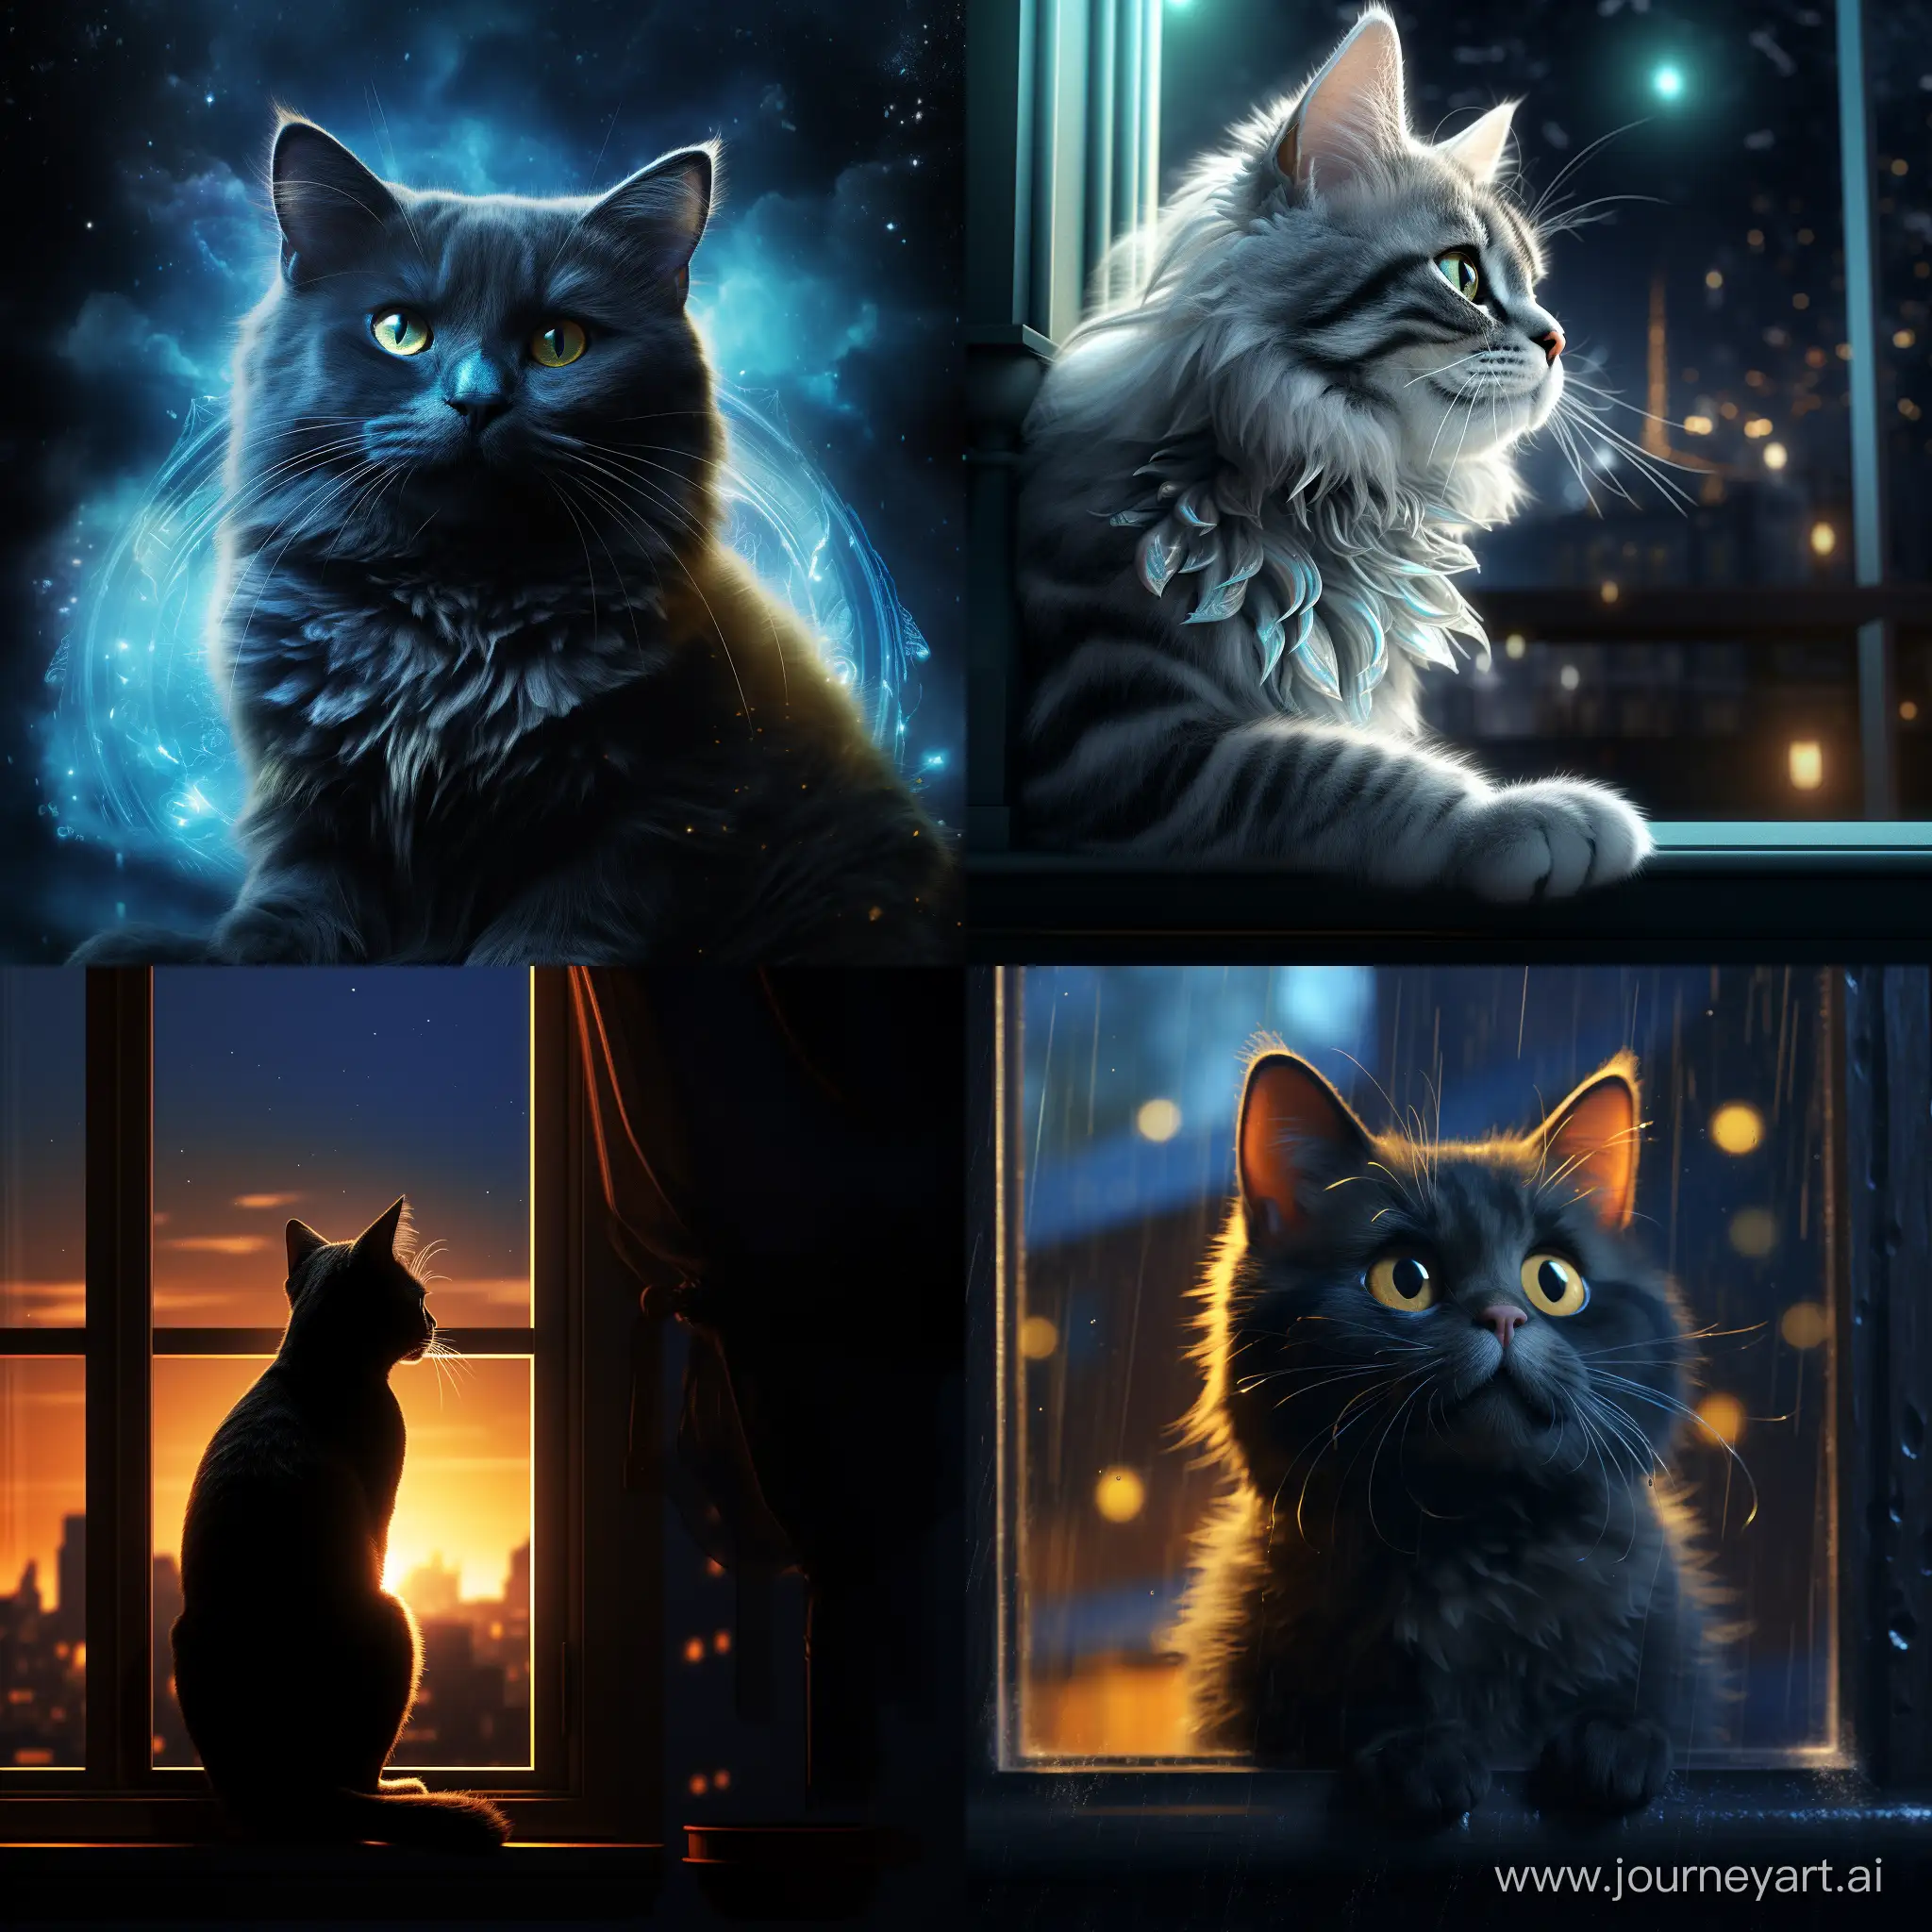 movie poster fantasy cinematic lighting, ::1.3, голубая кошка с черными узорами на фоне окна, свет проникает через окна отбрасывая блики на кошку, --chaos 15